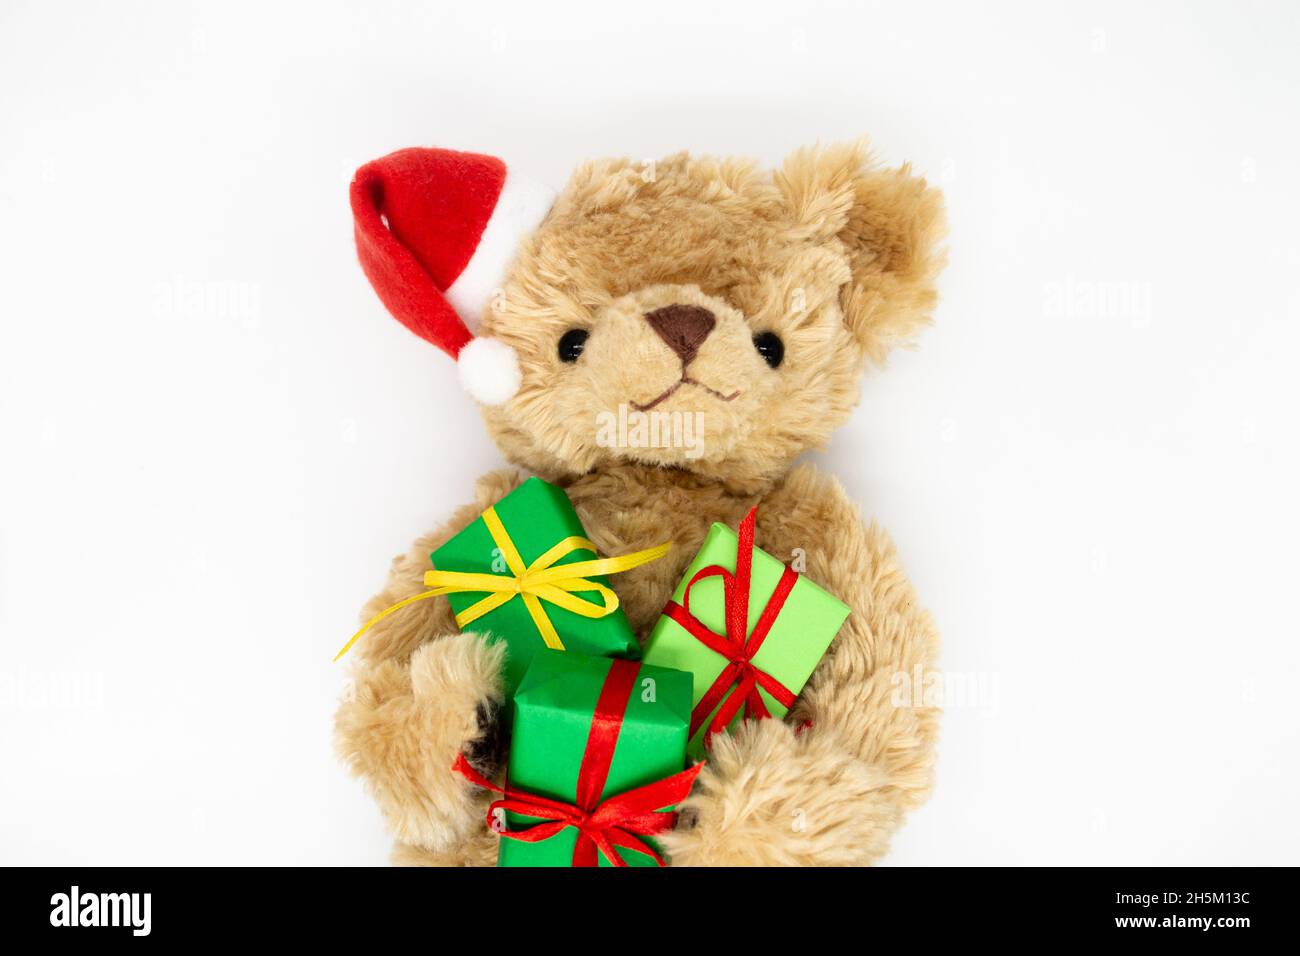 Un orsacchiotto peluche giocattolo in un cappello rosso di Babbo Natale con un pompom su un orecchio, tenendo le scatole regalo verdi nelle sue zampe. Sfondo bianco, spazio di copia. Il co Foto Stock